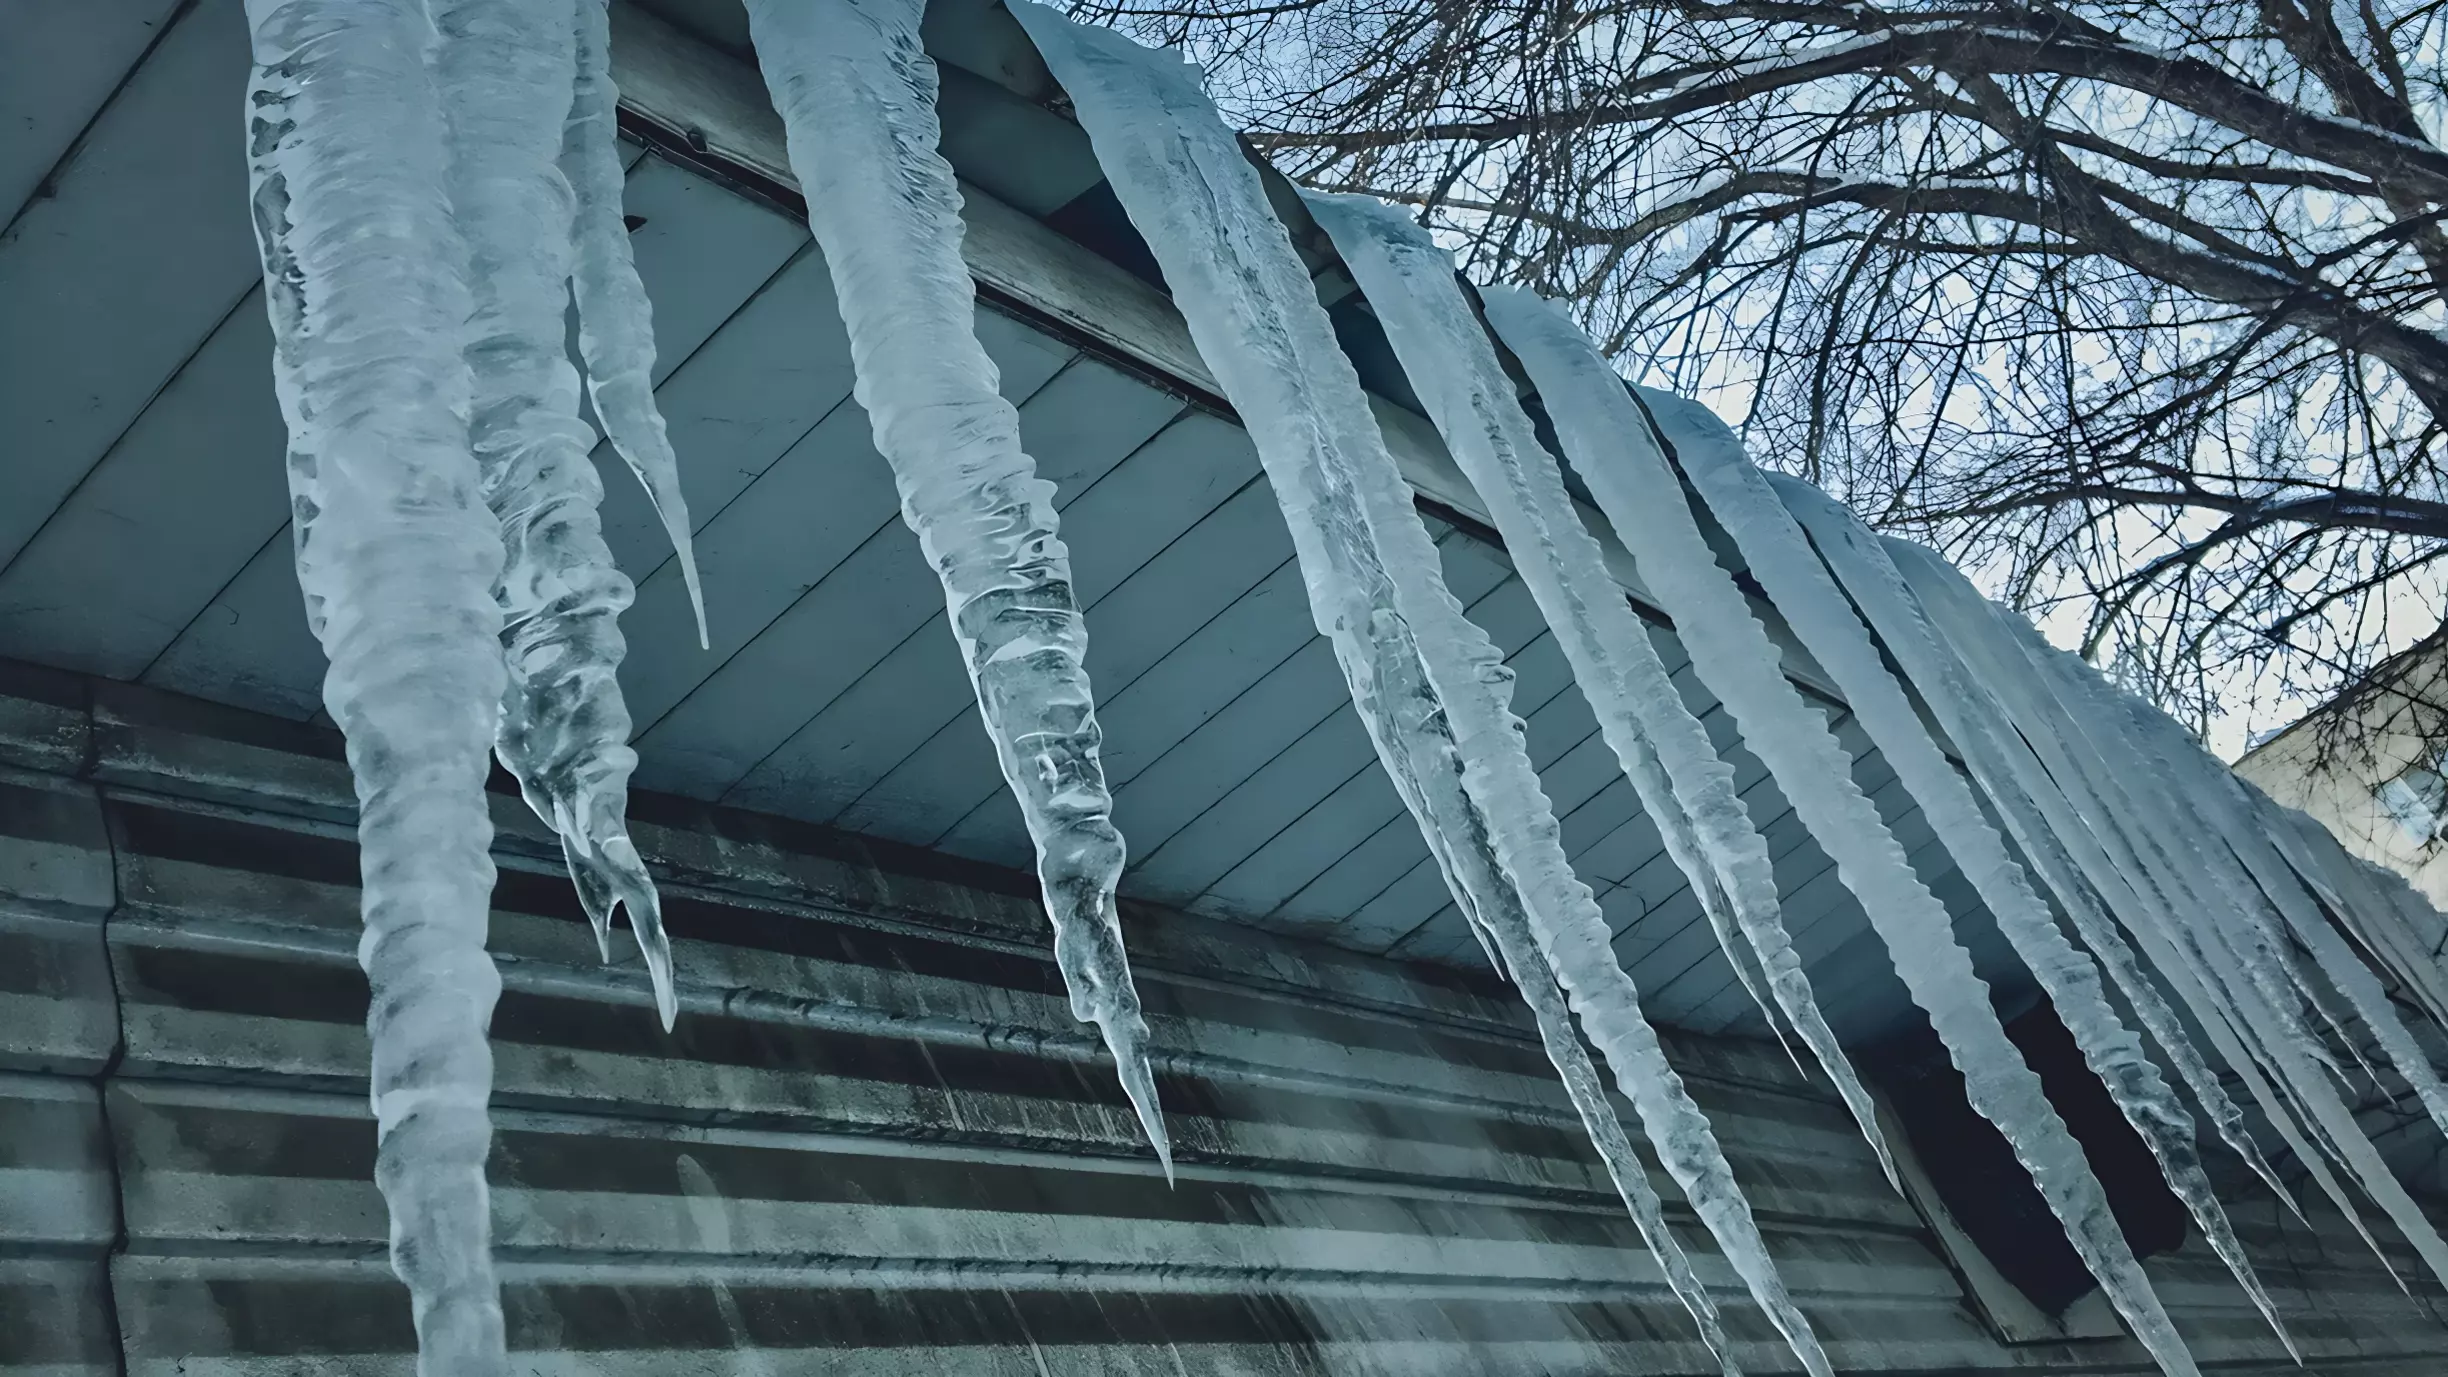 СК ХМАО призвал к ответственности коммунальщиков из-за снега и наледи на крышах